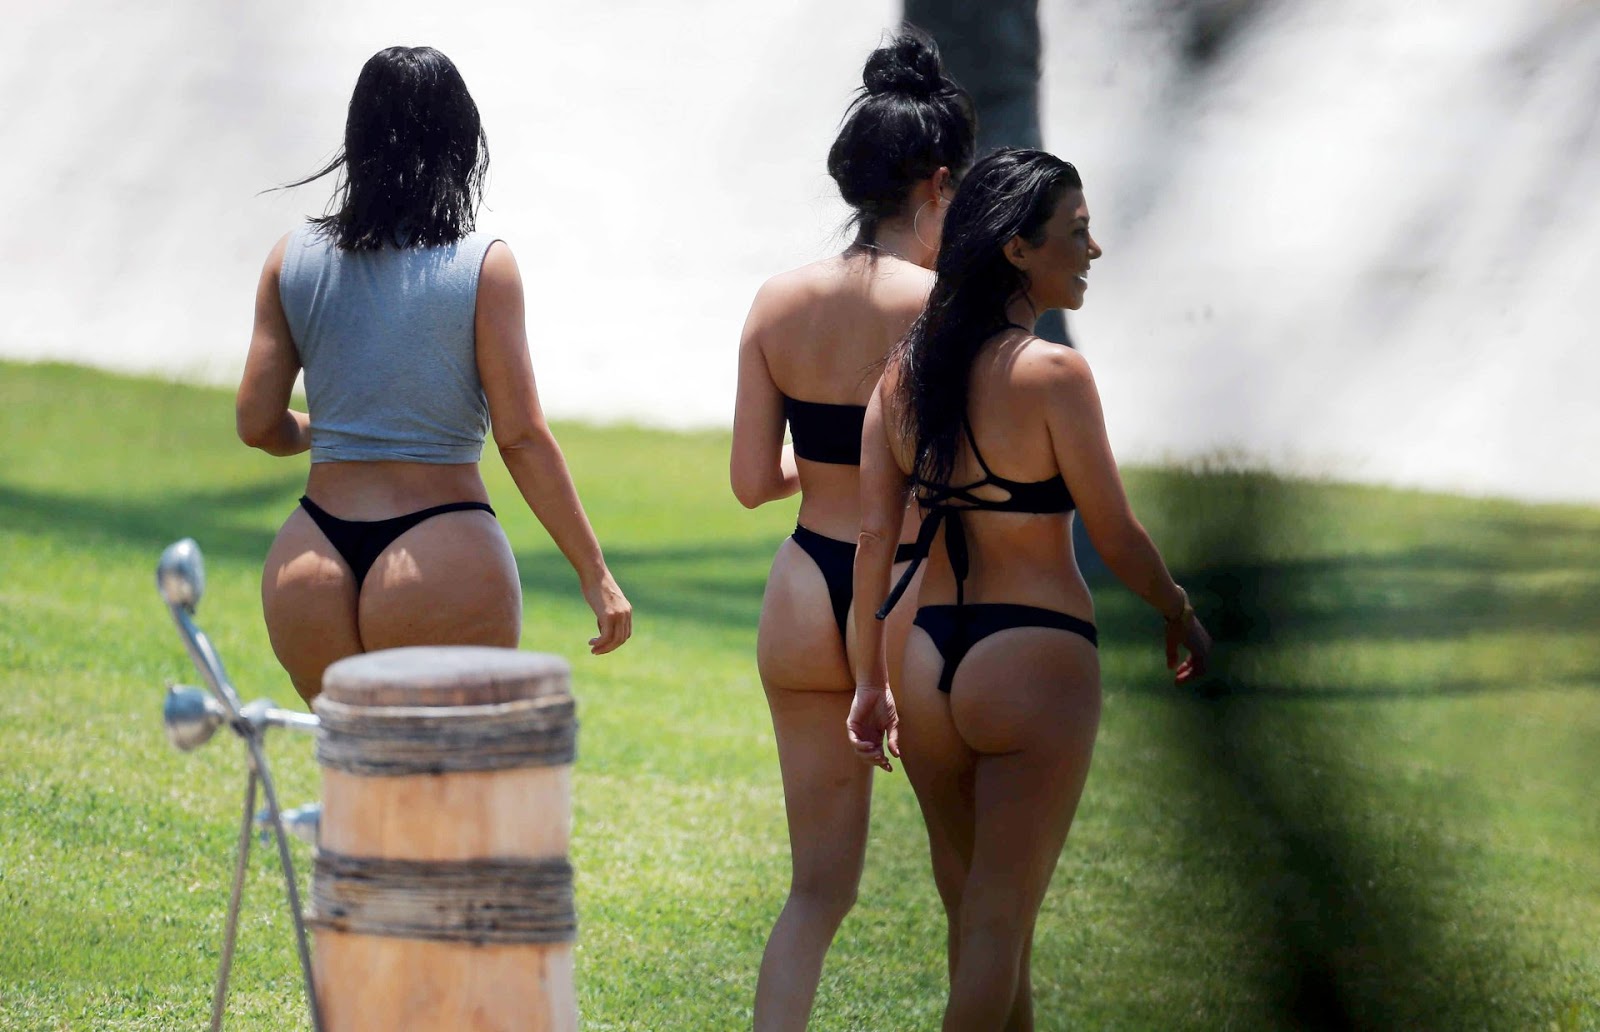 Kim & kourtney kardashian - bikini candids in mexico.